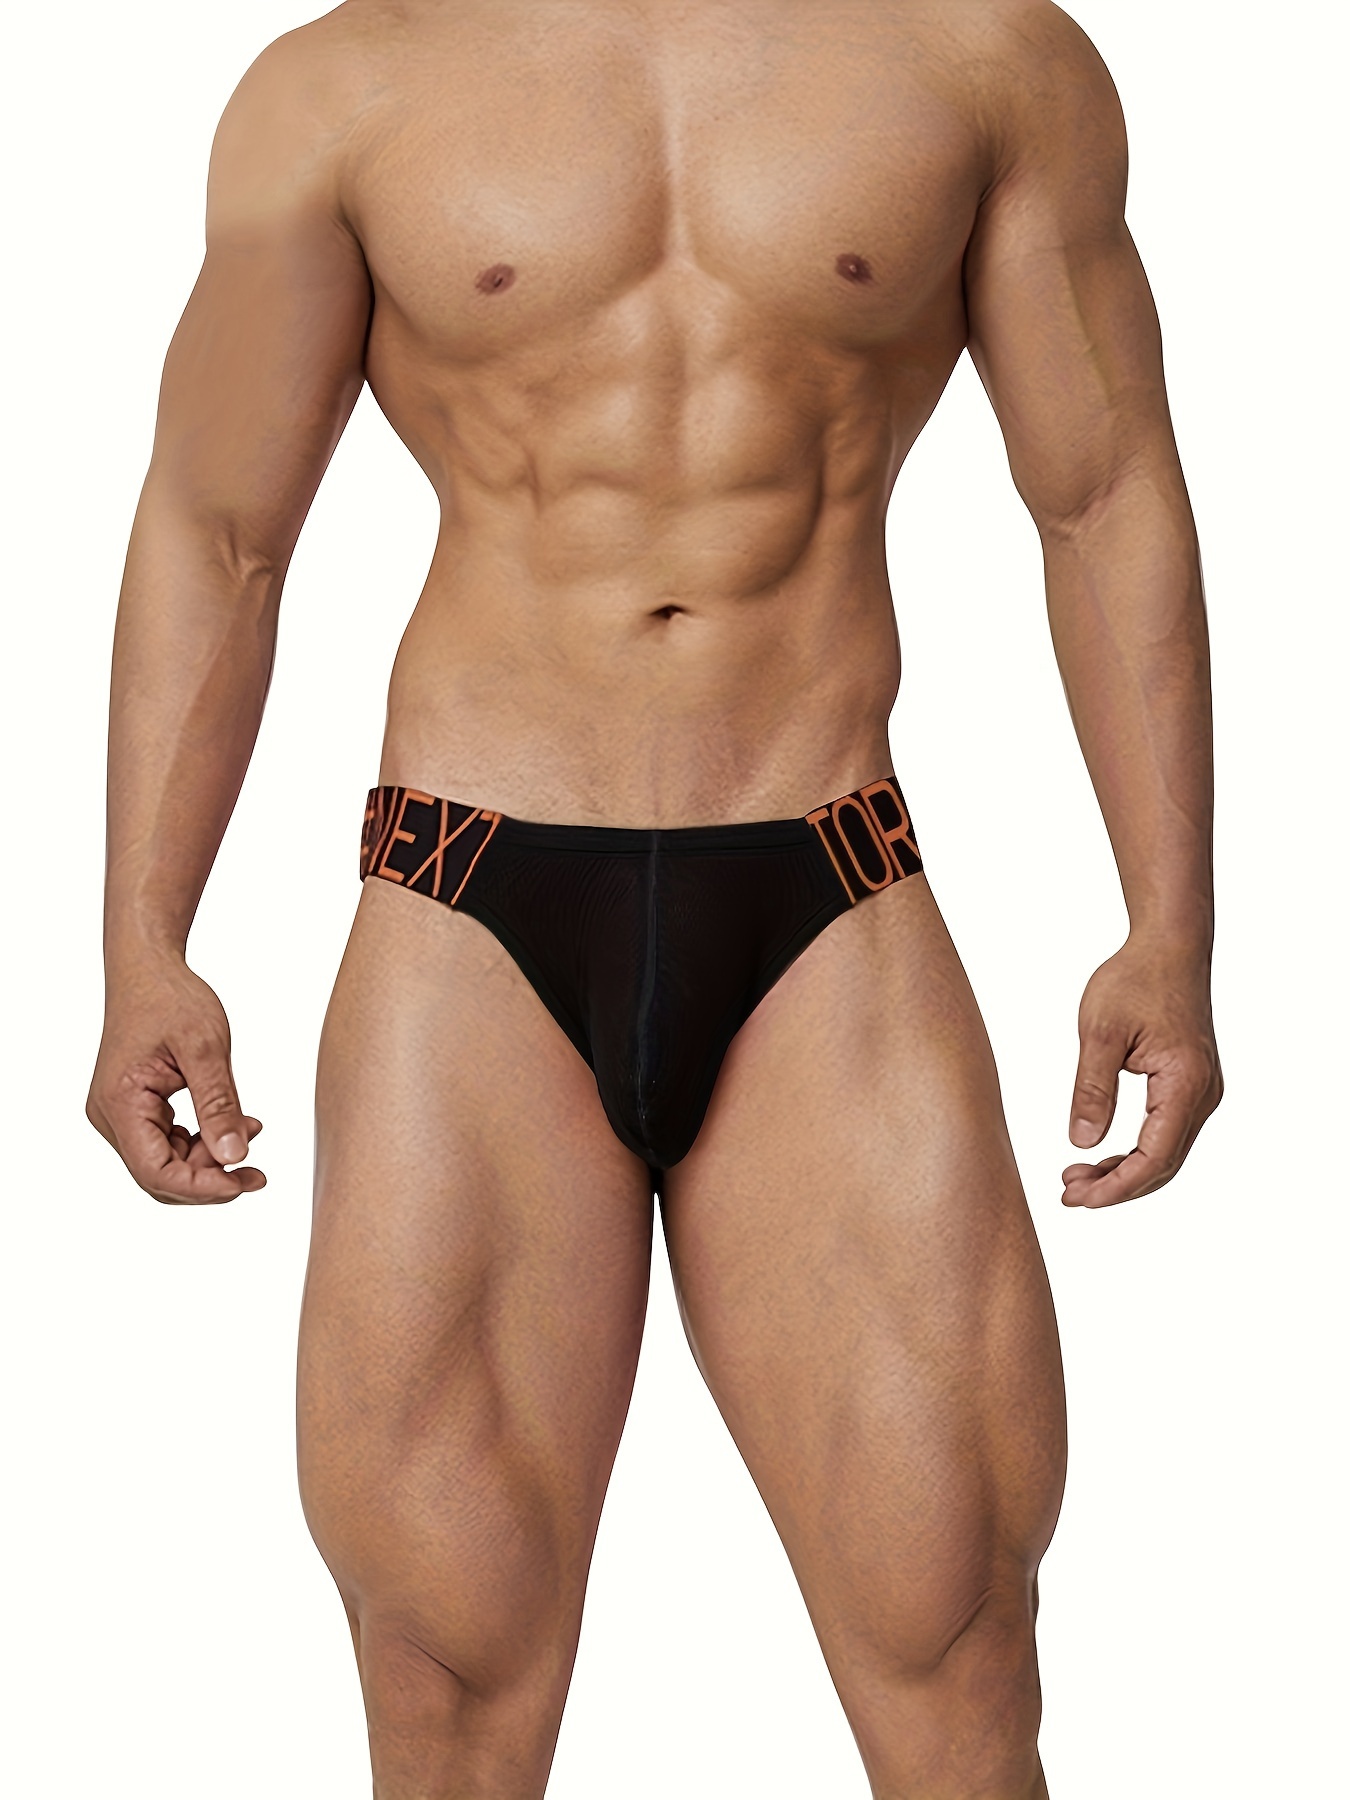 Men's Sexy Cotton Breathable Comfortable Briefs Underwear